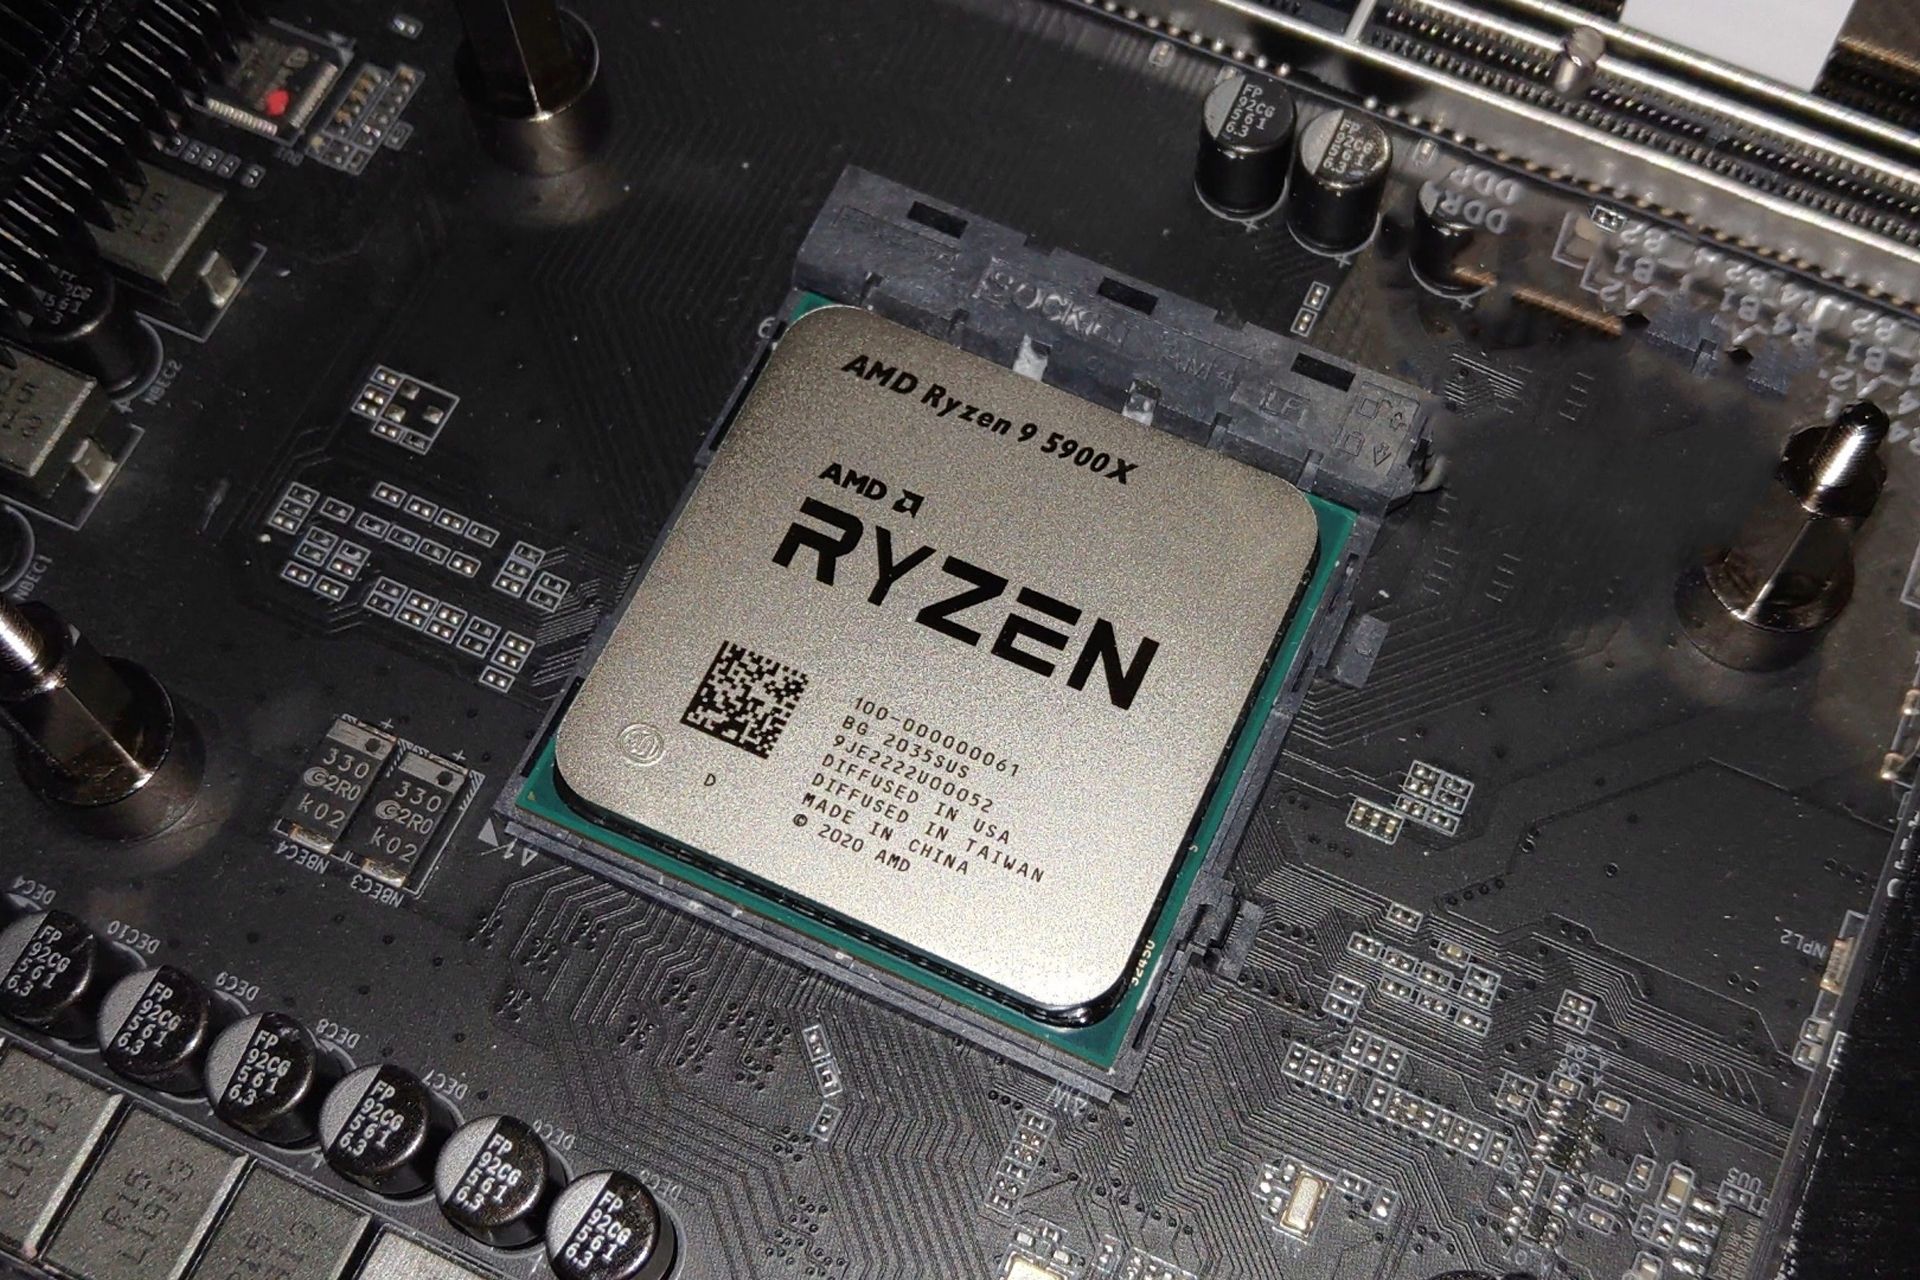 پردازنده ای ام دی رایزن ۵۰۰۰ / AMD Ryzen 5900X از نمای بالا در مادربرد